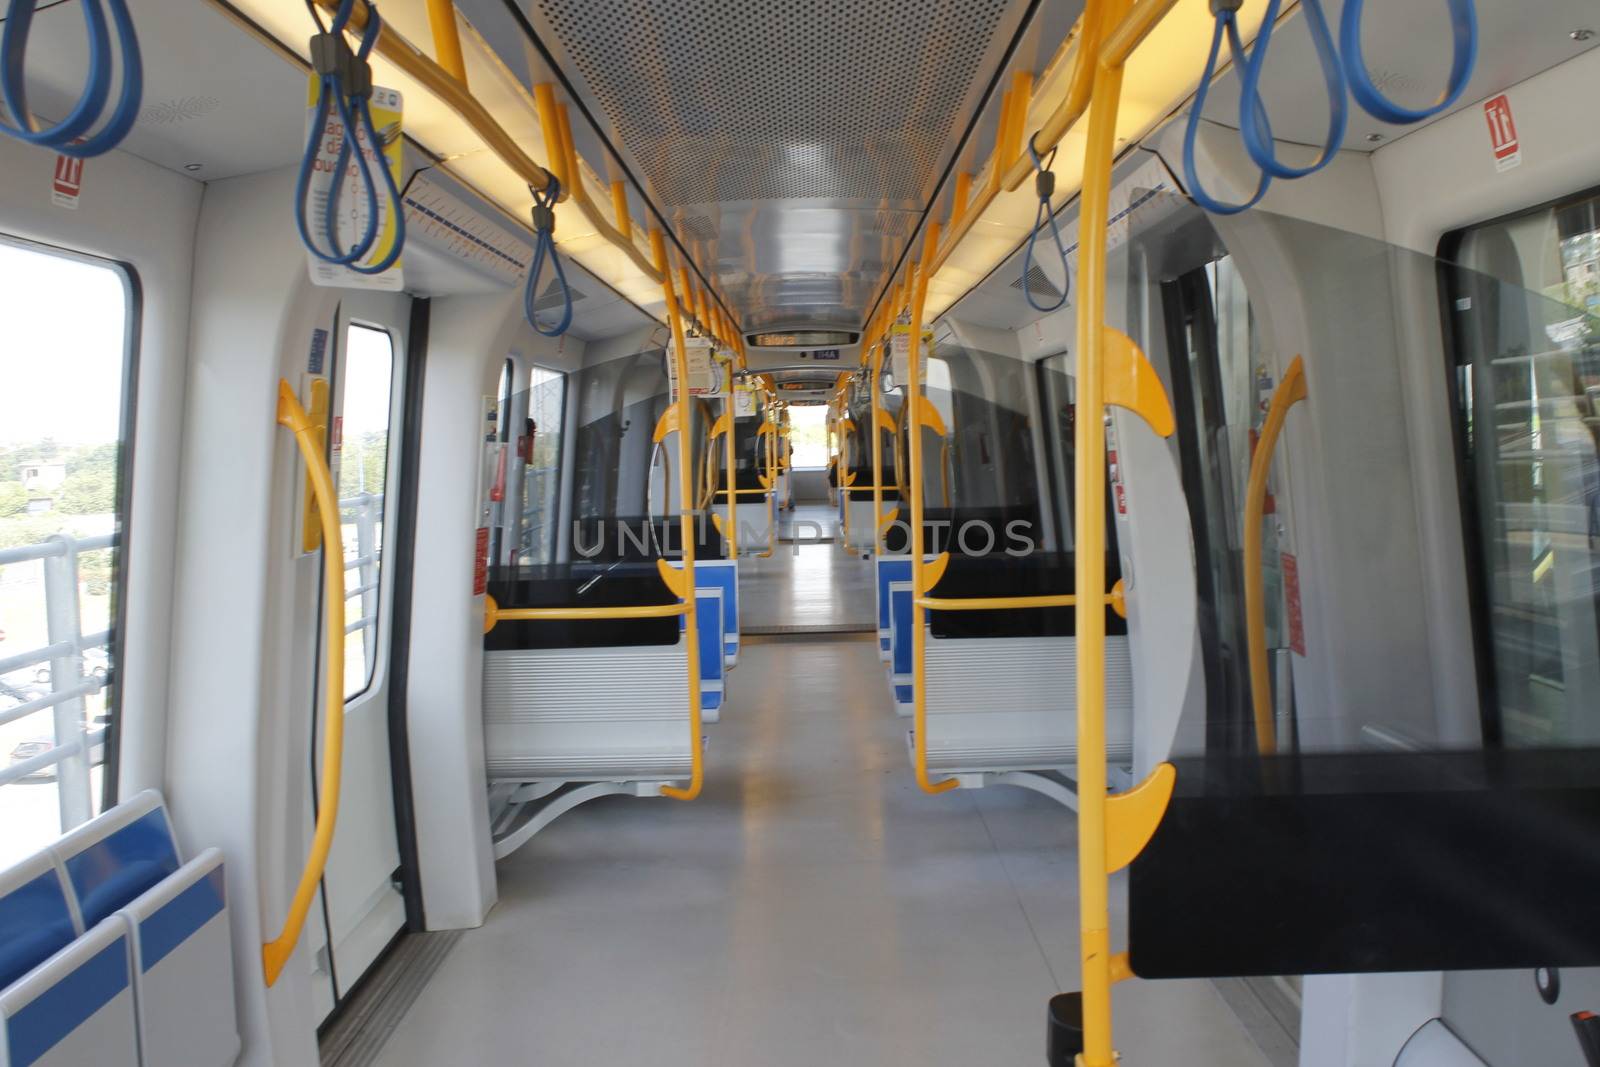 Subway train car inside by marcobir